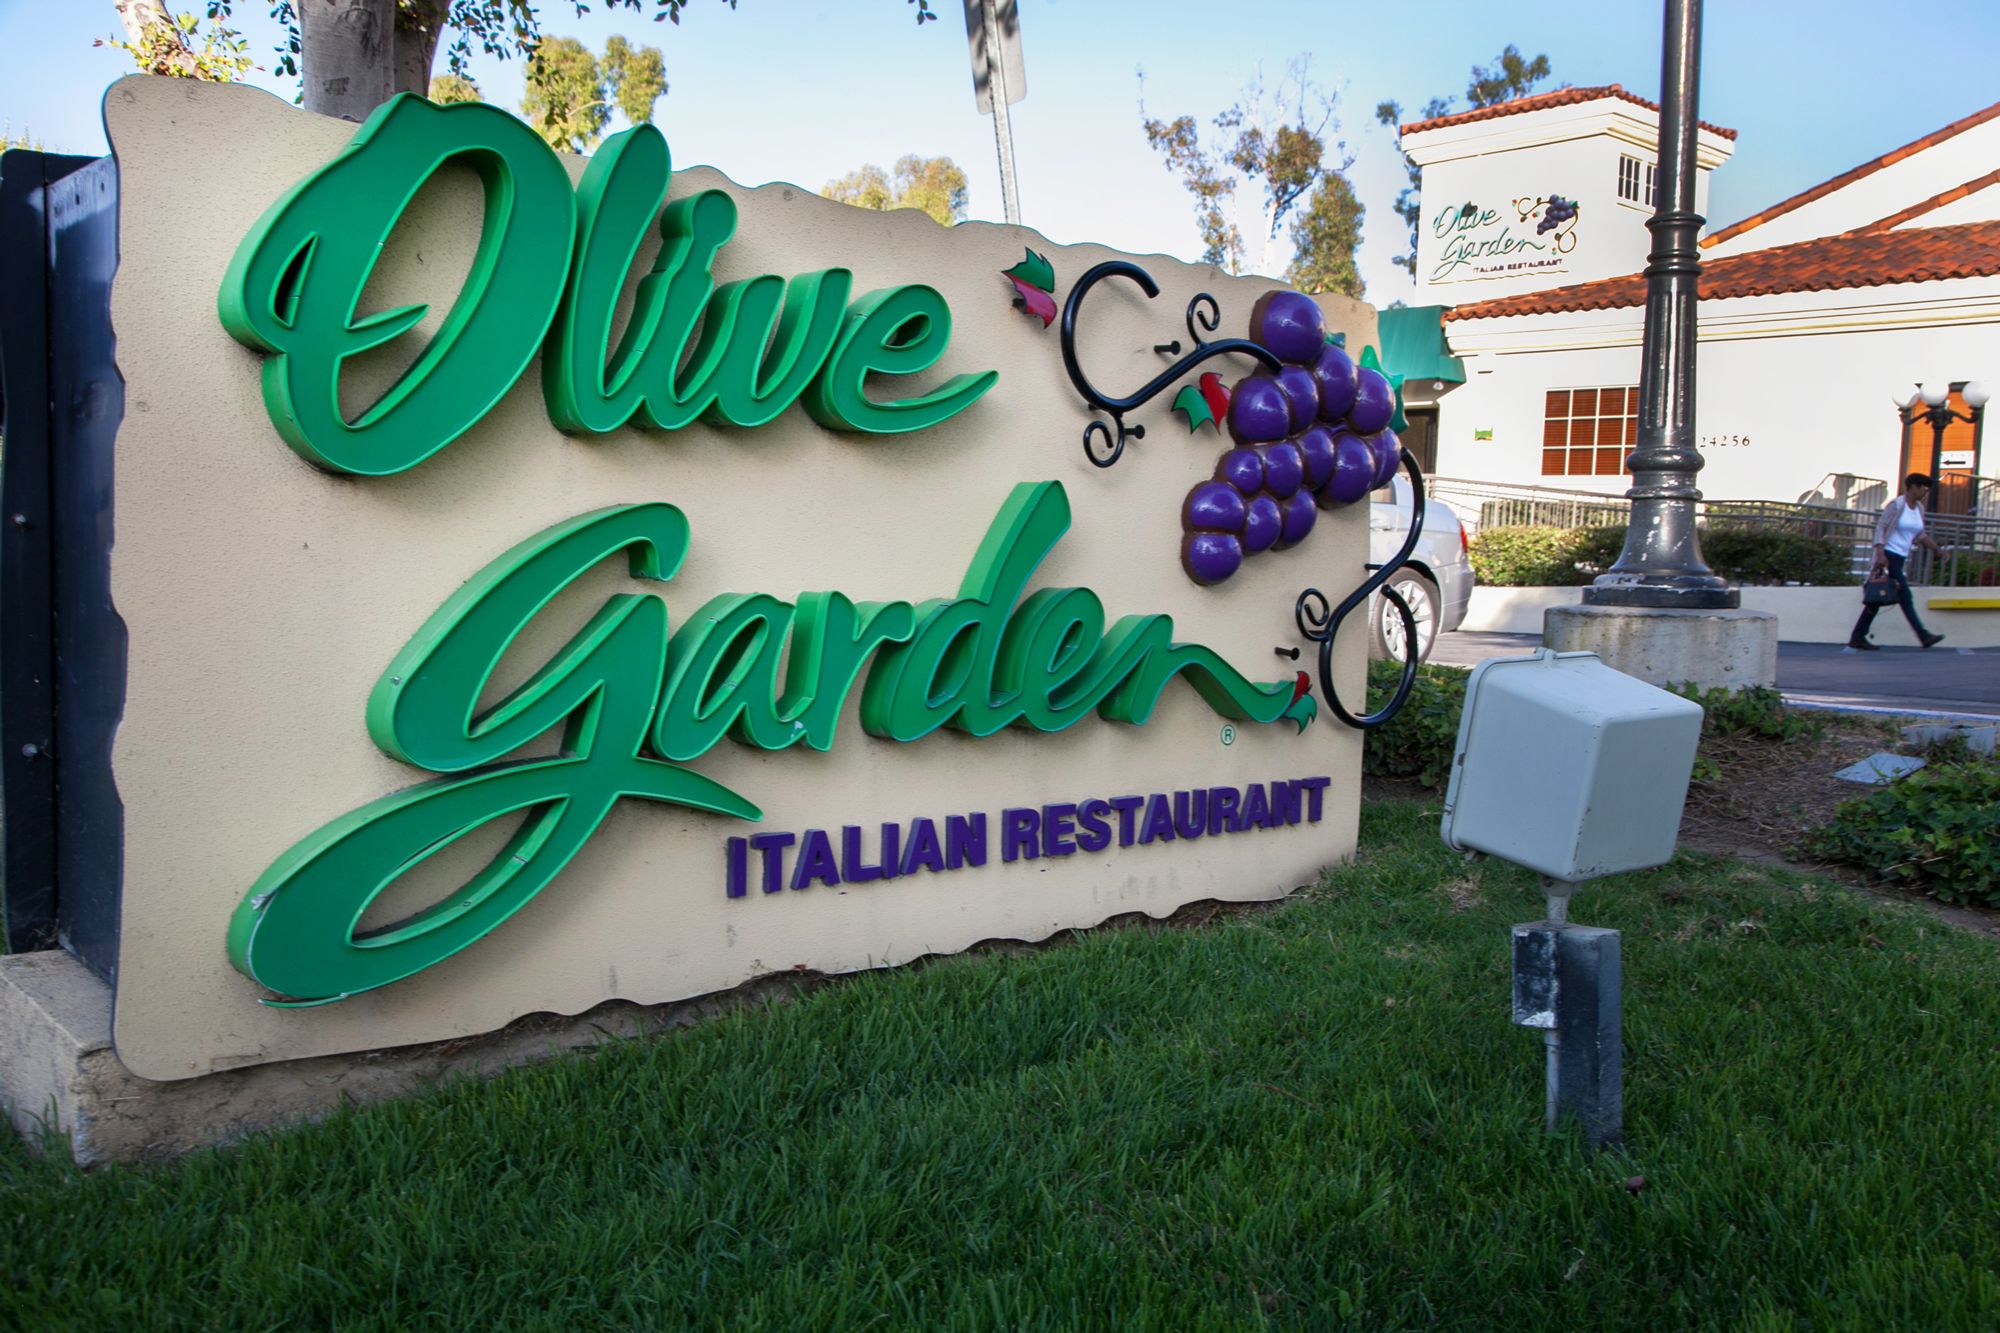 Shares of Olive Garden parent Darden skid after revenue ...